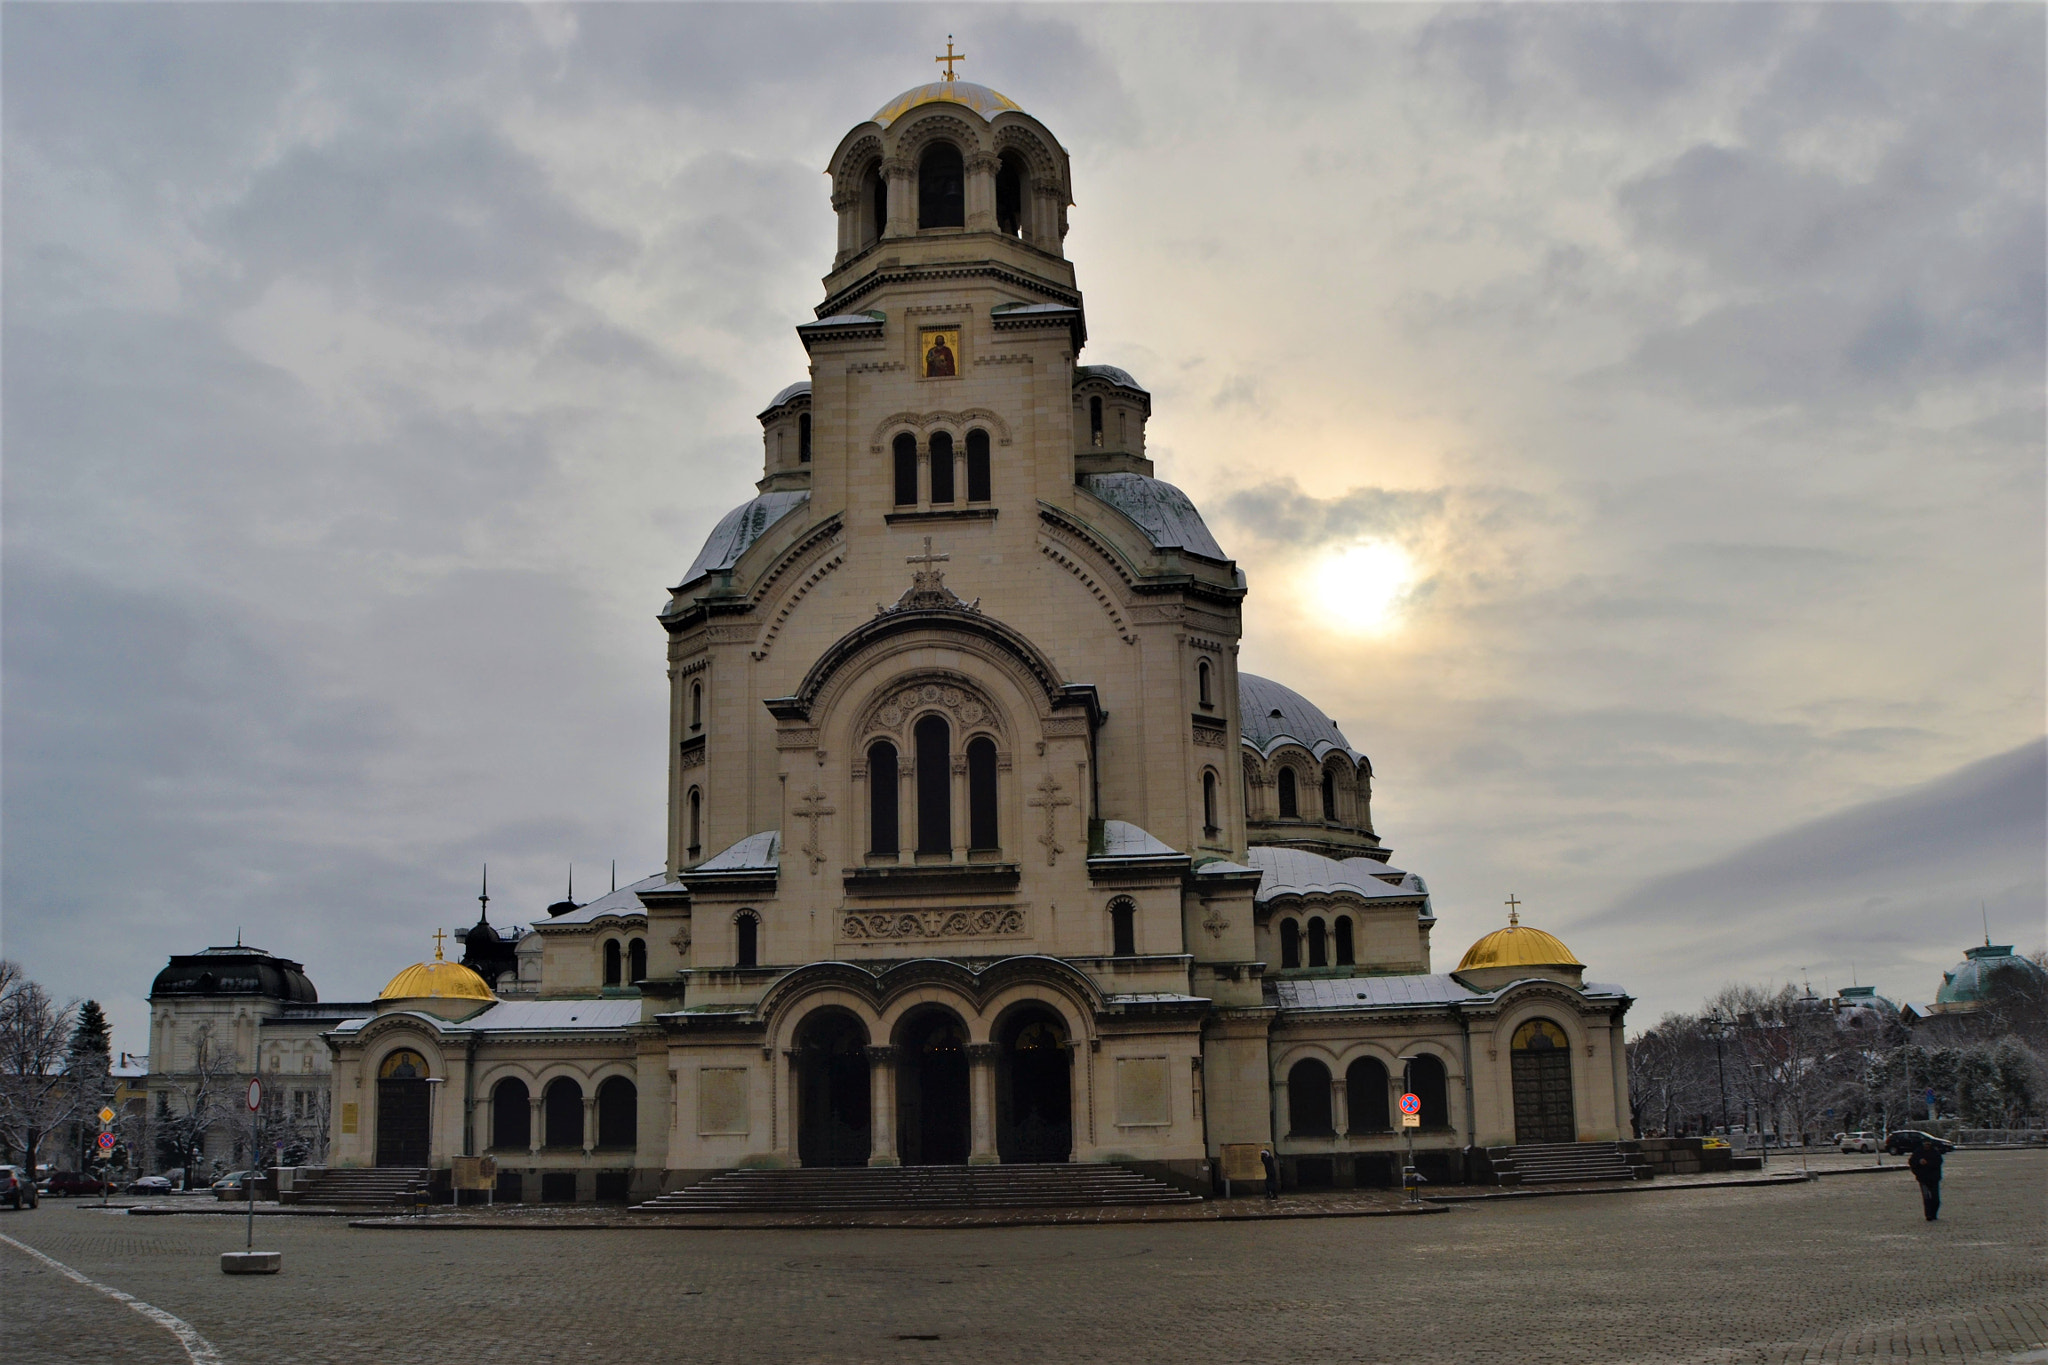 Nikon D3100 + AF-S DX Zoom-Nikkor 18-55mm f/3.5-5.6G ED sample photo. The st. alexander nevsky cathedral photography